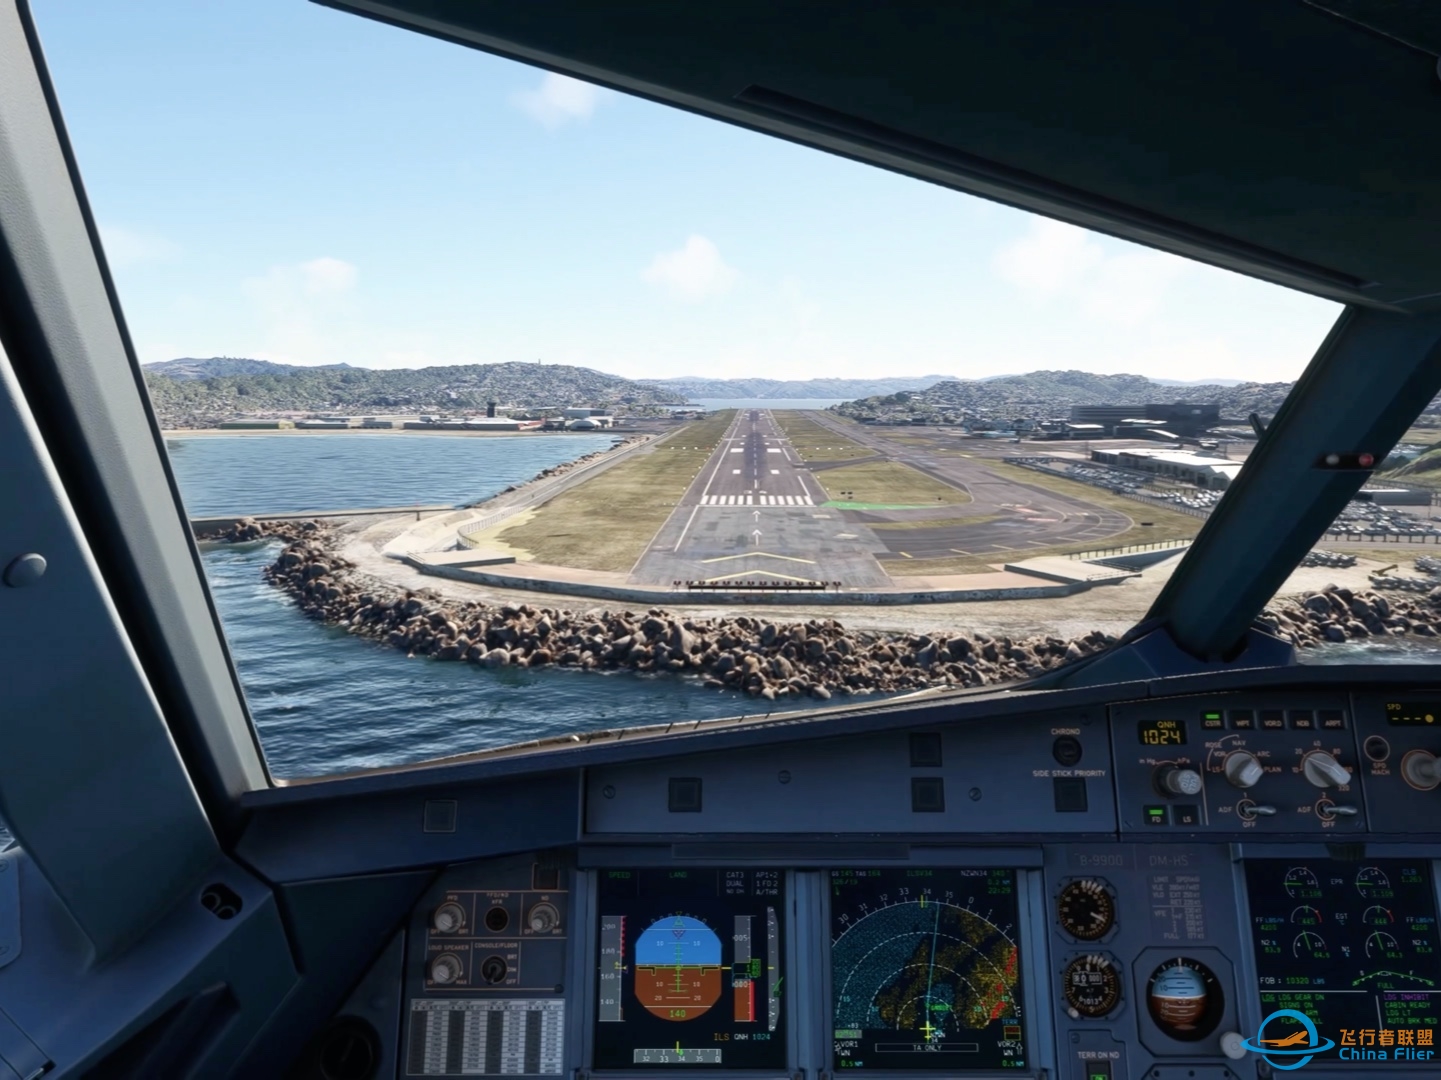 降落微软飞行模拟2020最喜欢的机场新西兰惠灵顿机场-6381 